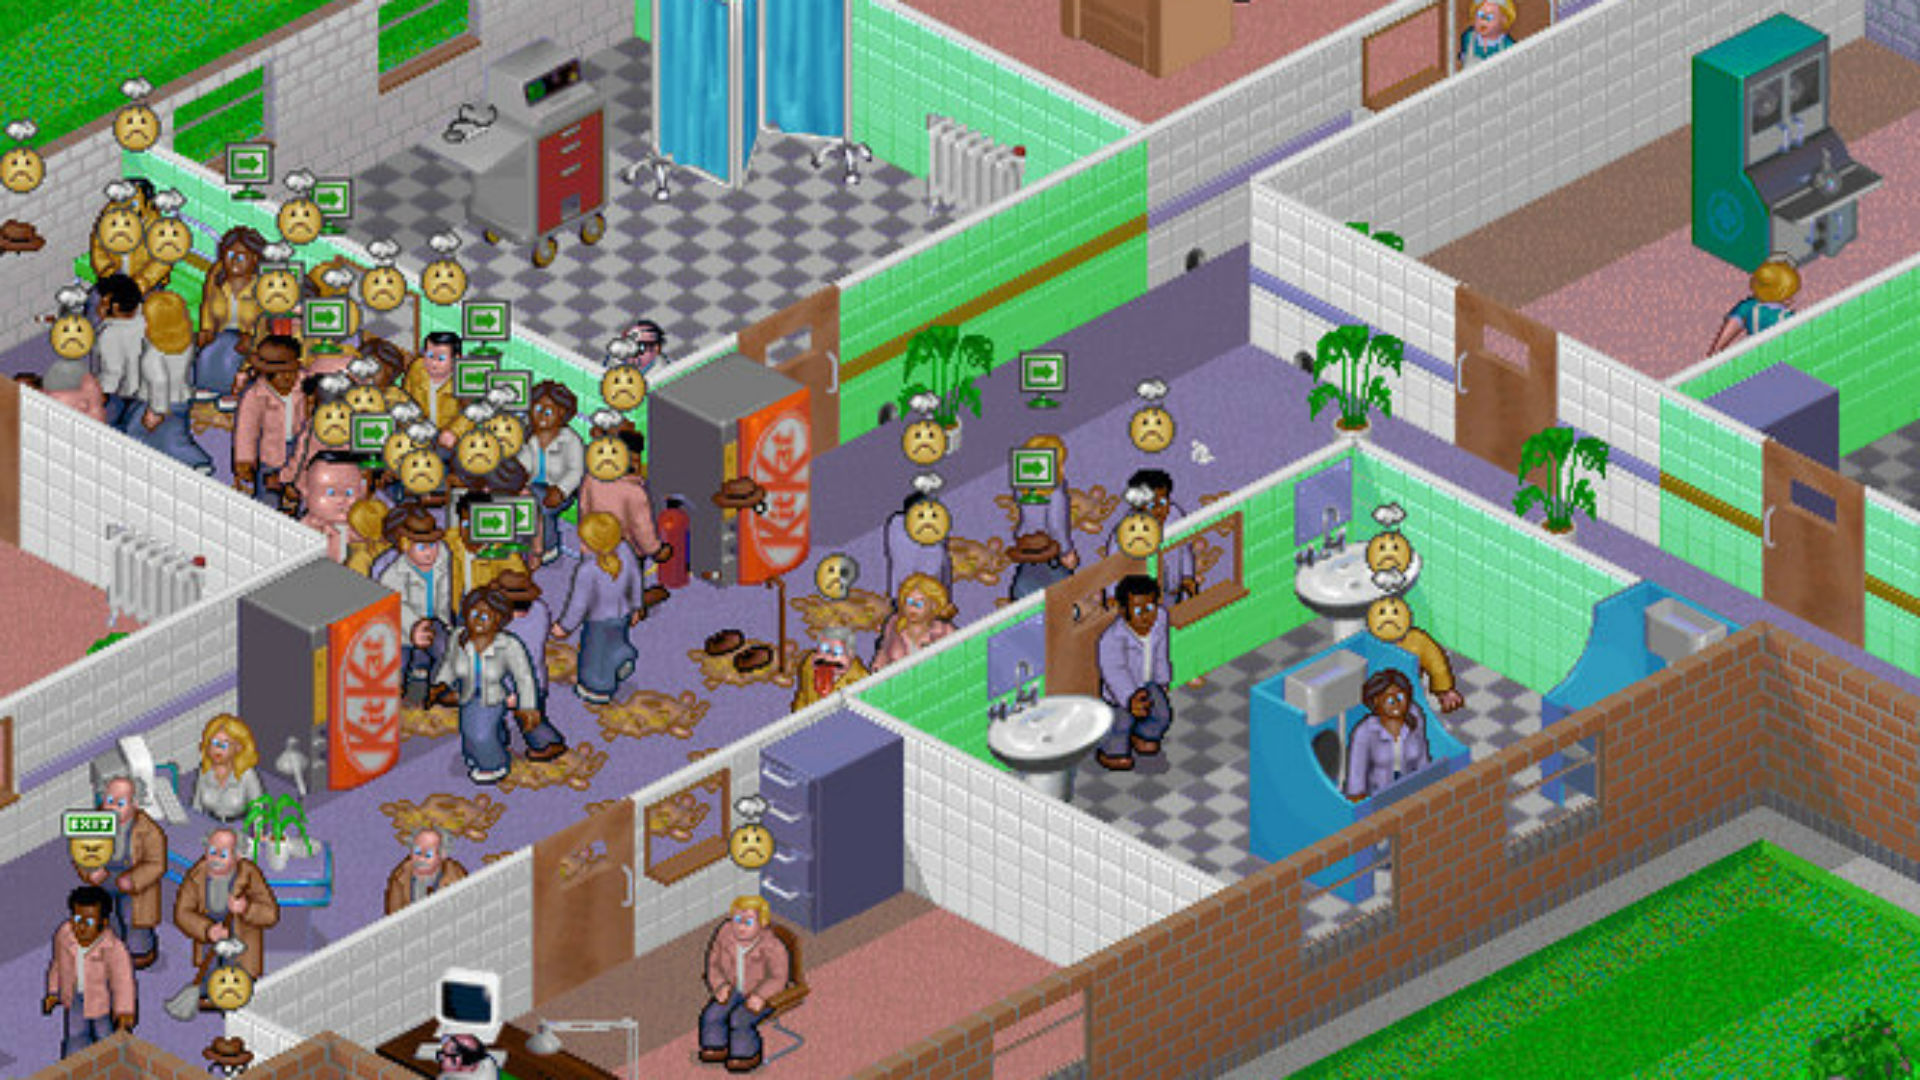 Mehrere Patienten versammeln sich in einem Korridor im Themenkrankenhaus, einem der besten alten Spiele